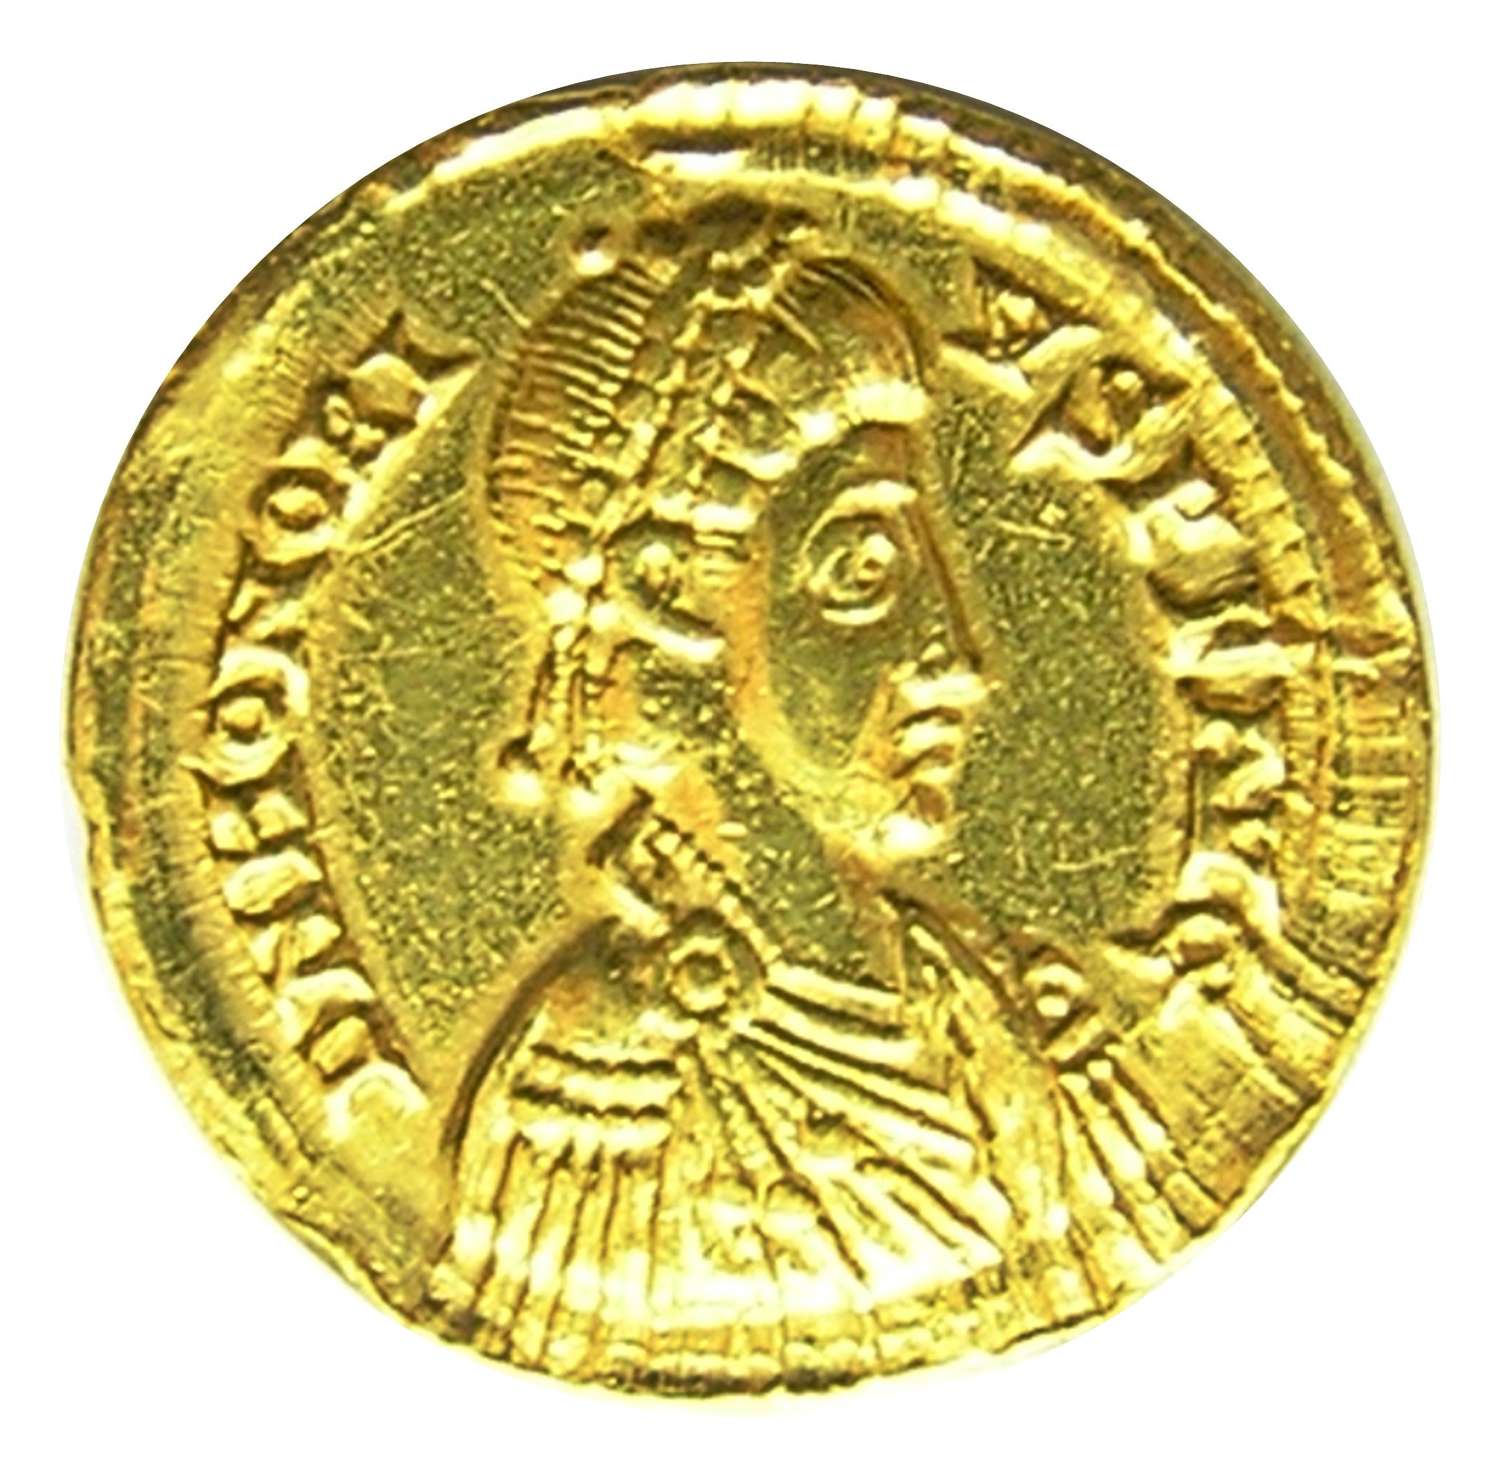 Roman gold solidus of emperor Honorius Ravenna